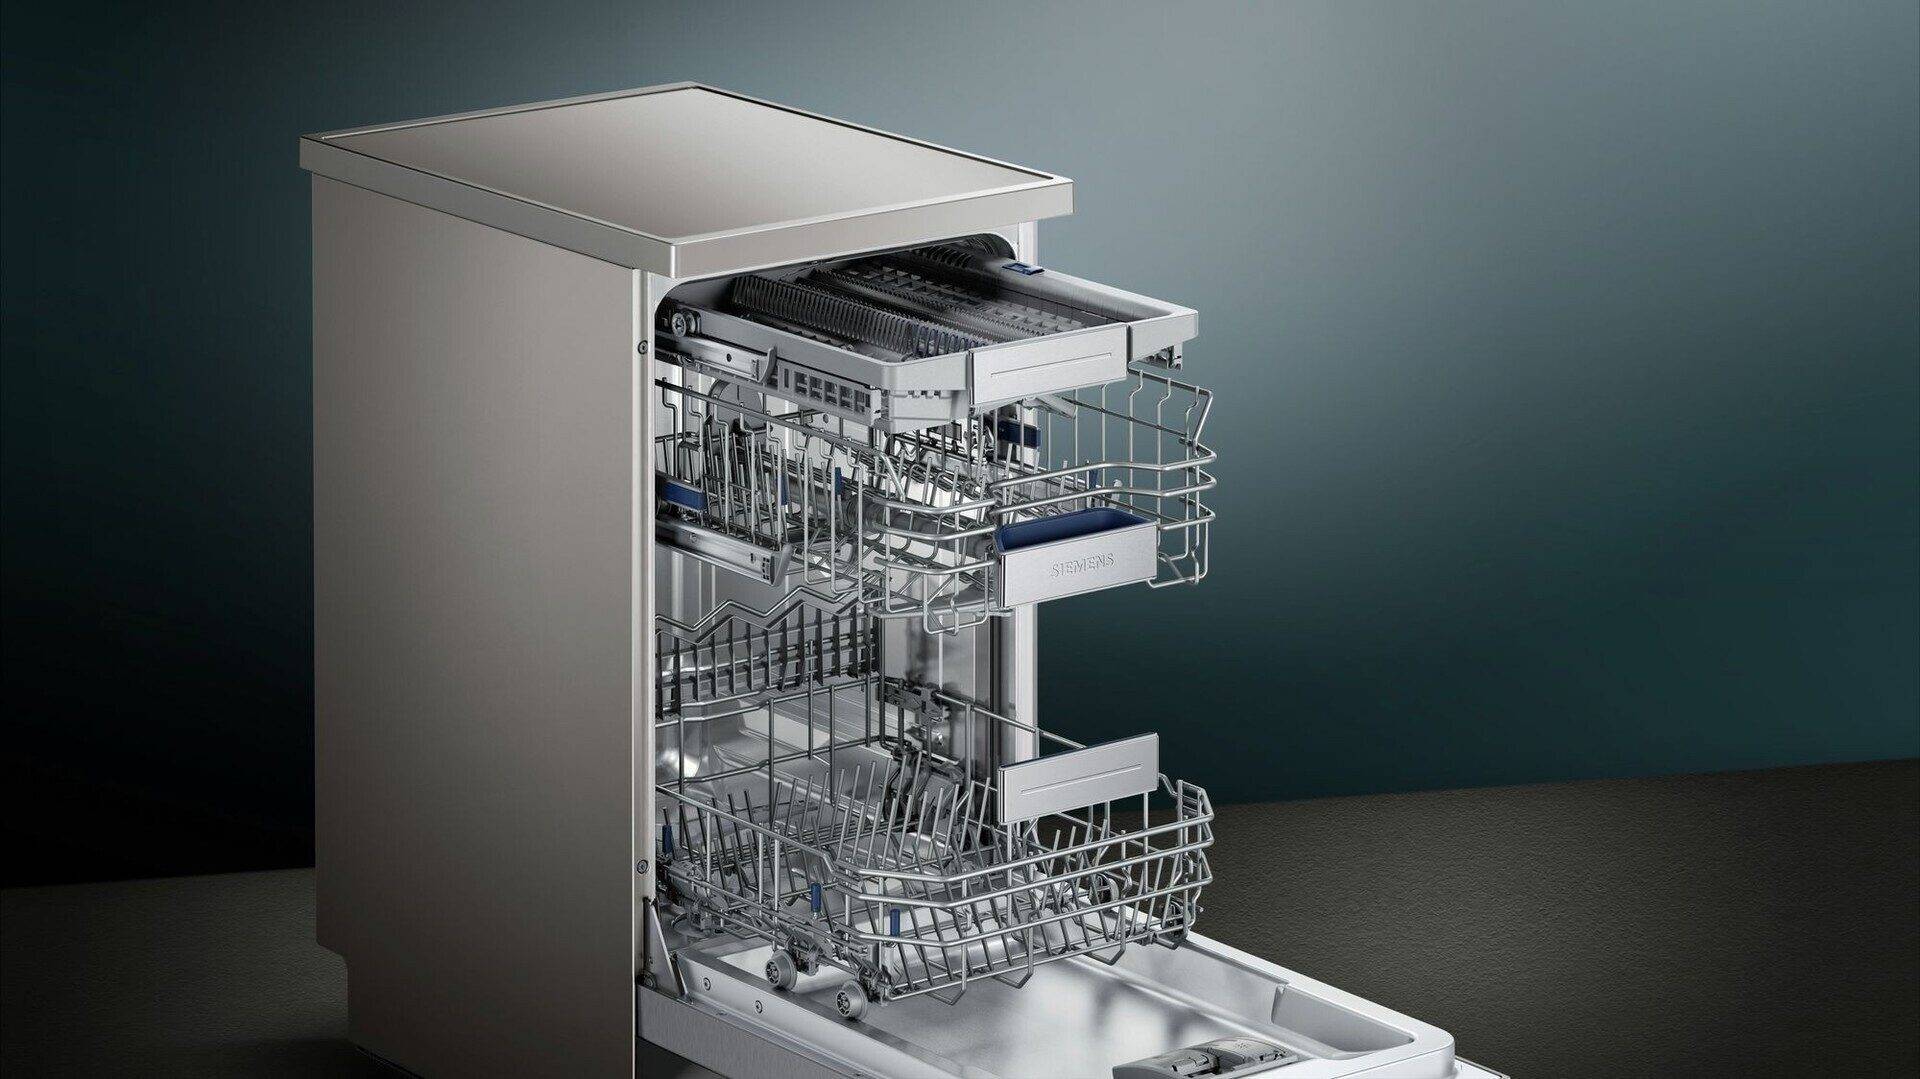 Настольная посудомоечная машина: топ-10 рейтинг и обзор лучших маленьких моделей 2020-2021 года, а также отзывы о них и характеристики